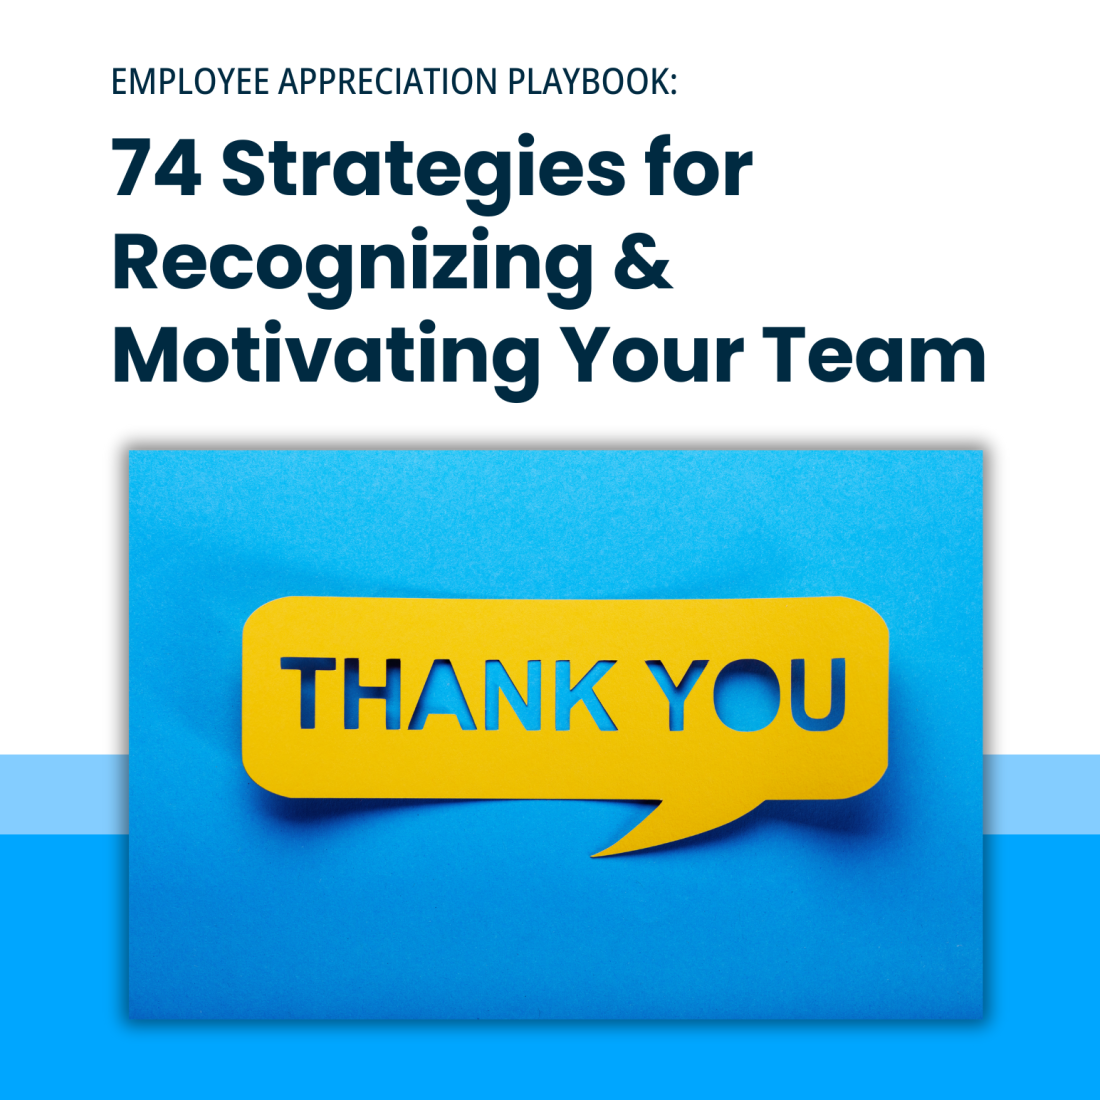 Employee Appreciation Playbook